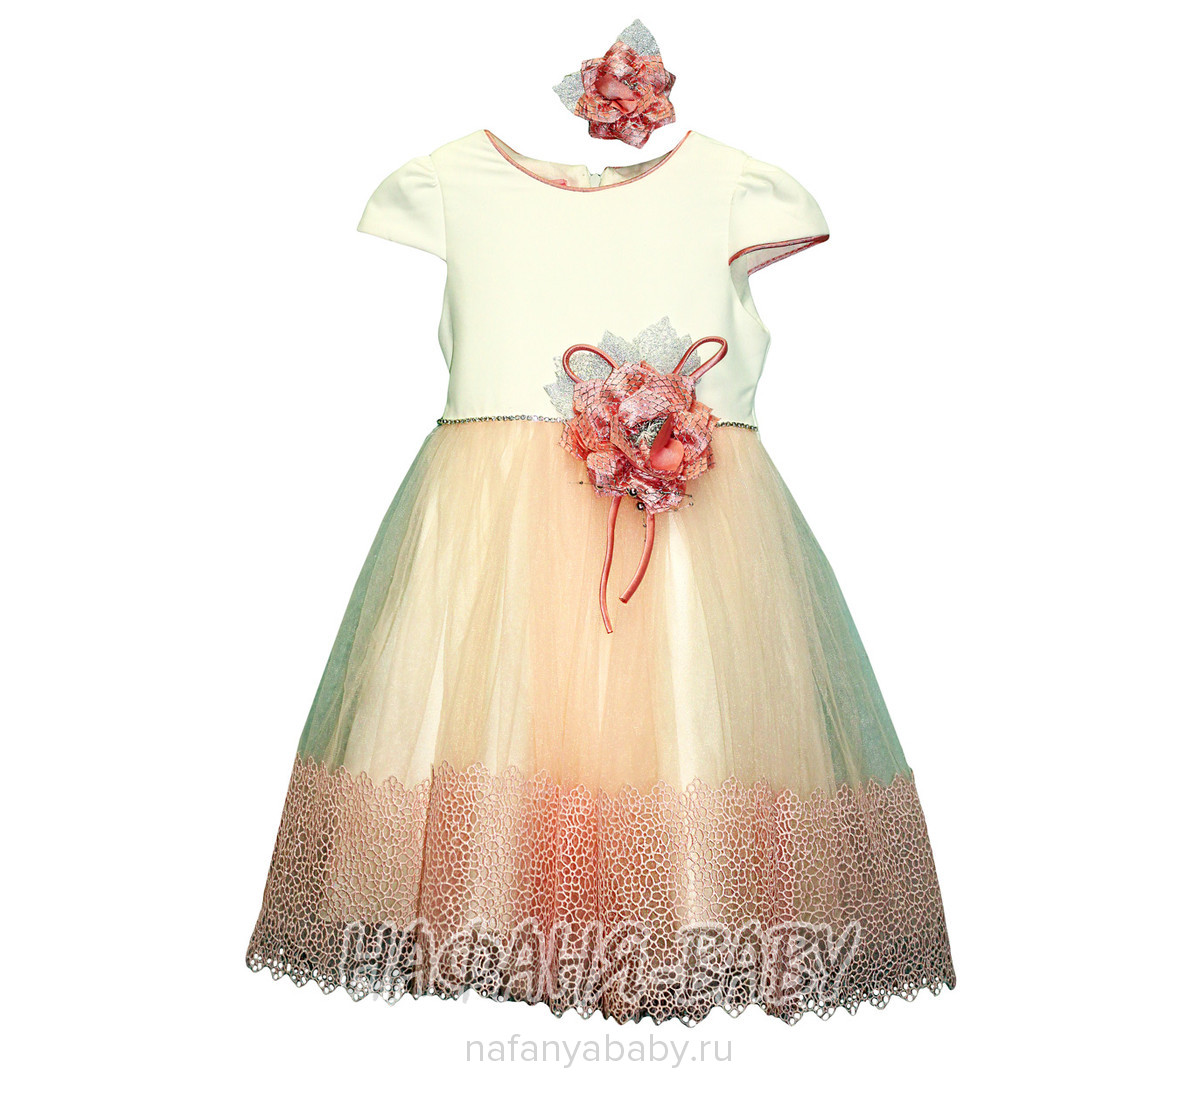 Детское платье ERAY, купить в интернет магазине Нафаня. арт: 235.